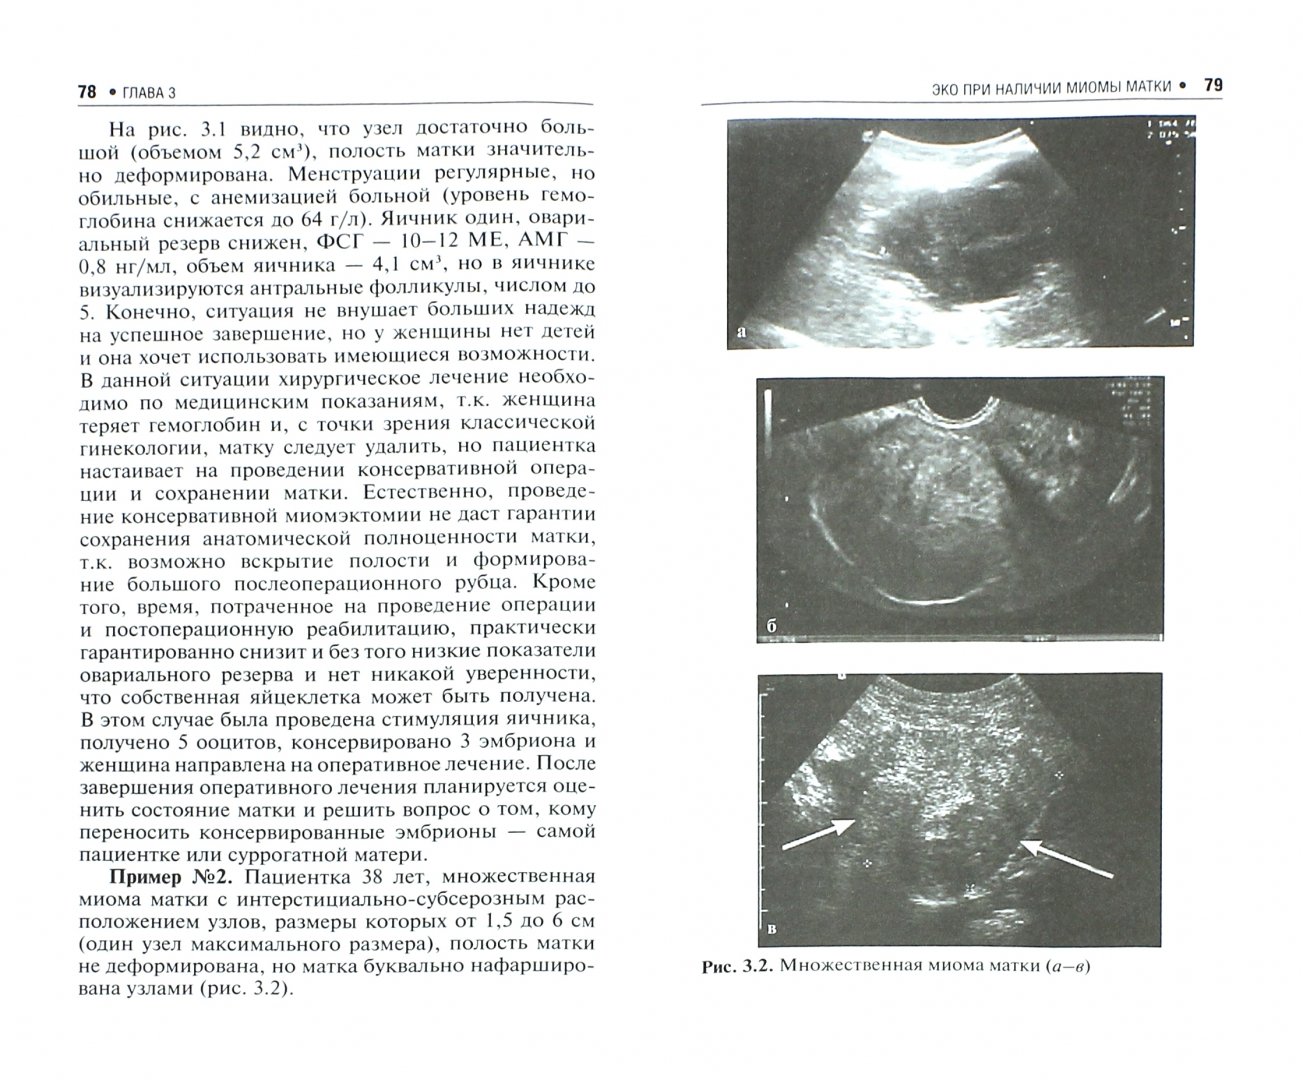 Иллюстрация 1 из 24 для ЭКО при гинекологических и эндокринных заболеваниях - Татьяна Назаренко | Лабиринт - книги. Источник: Лабиринт